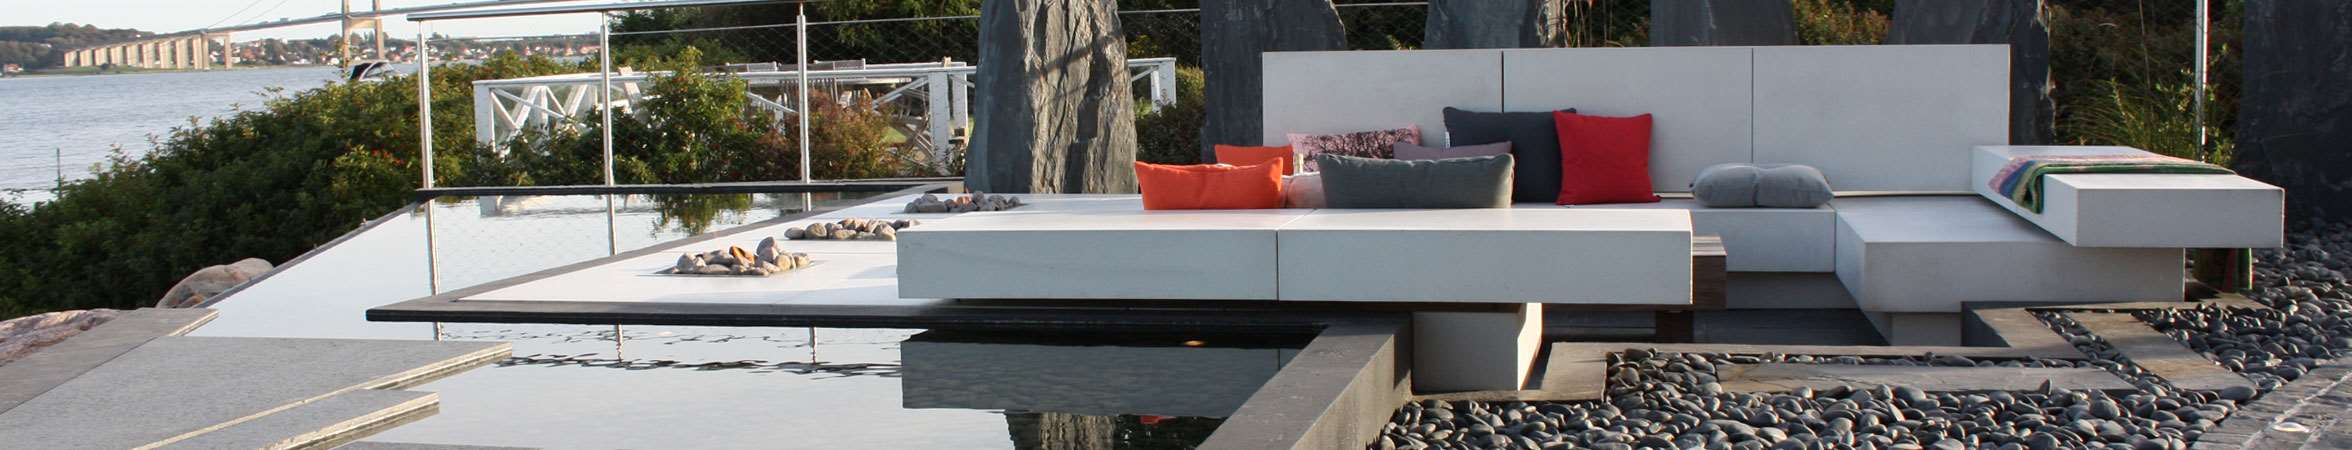 Loungemoebel på terrasse tegnet af havearkitekt Tor Haddeland